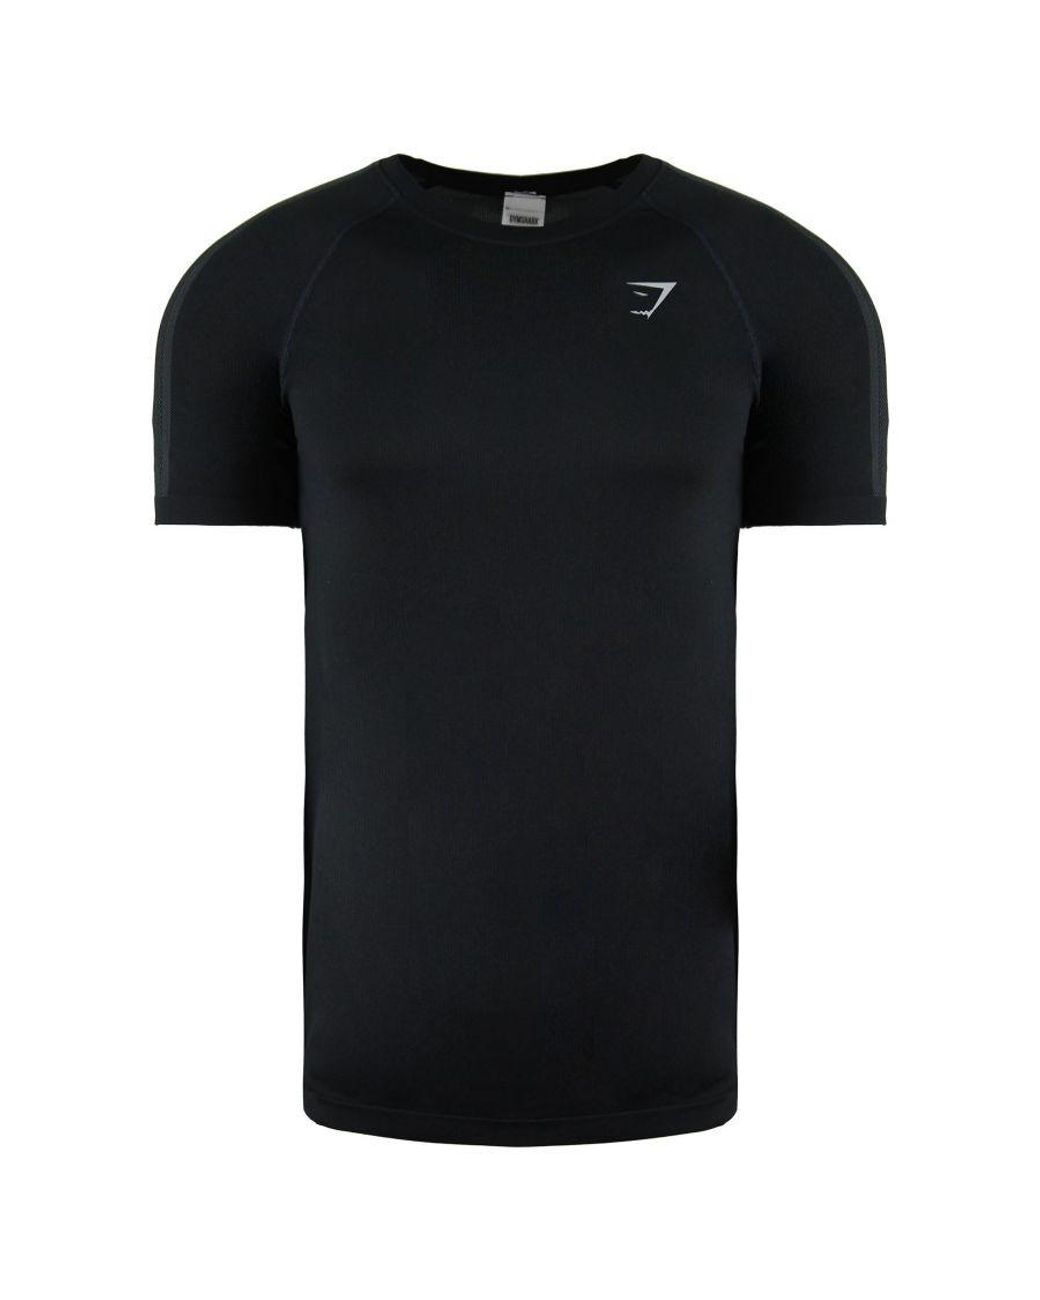 GYMSHARK Aspect Black T-shirt Nylon for Men Lyst UK